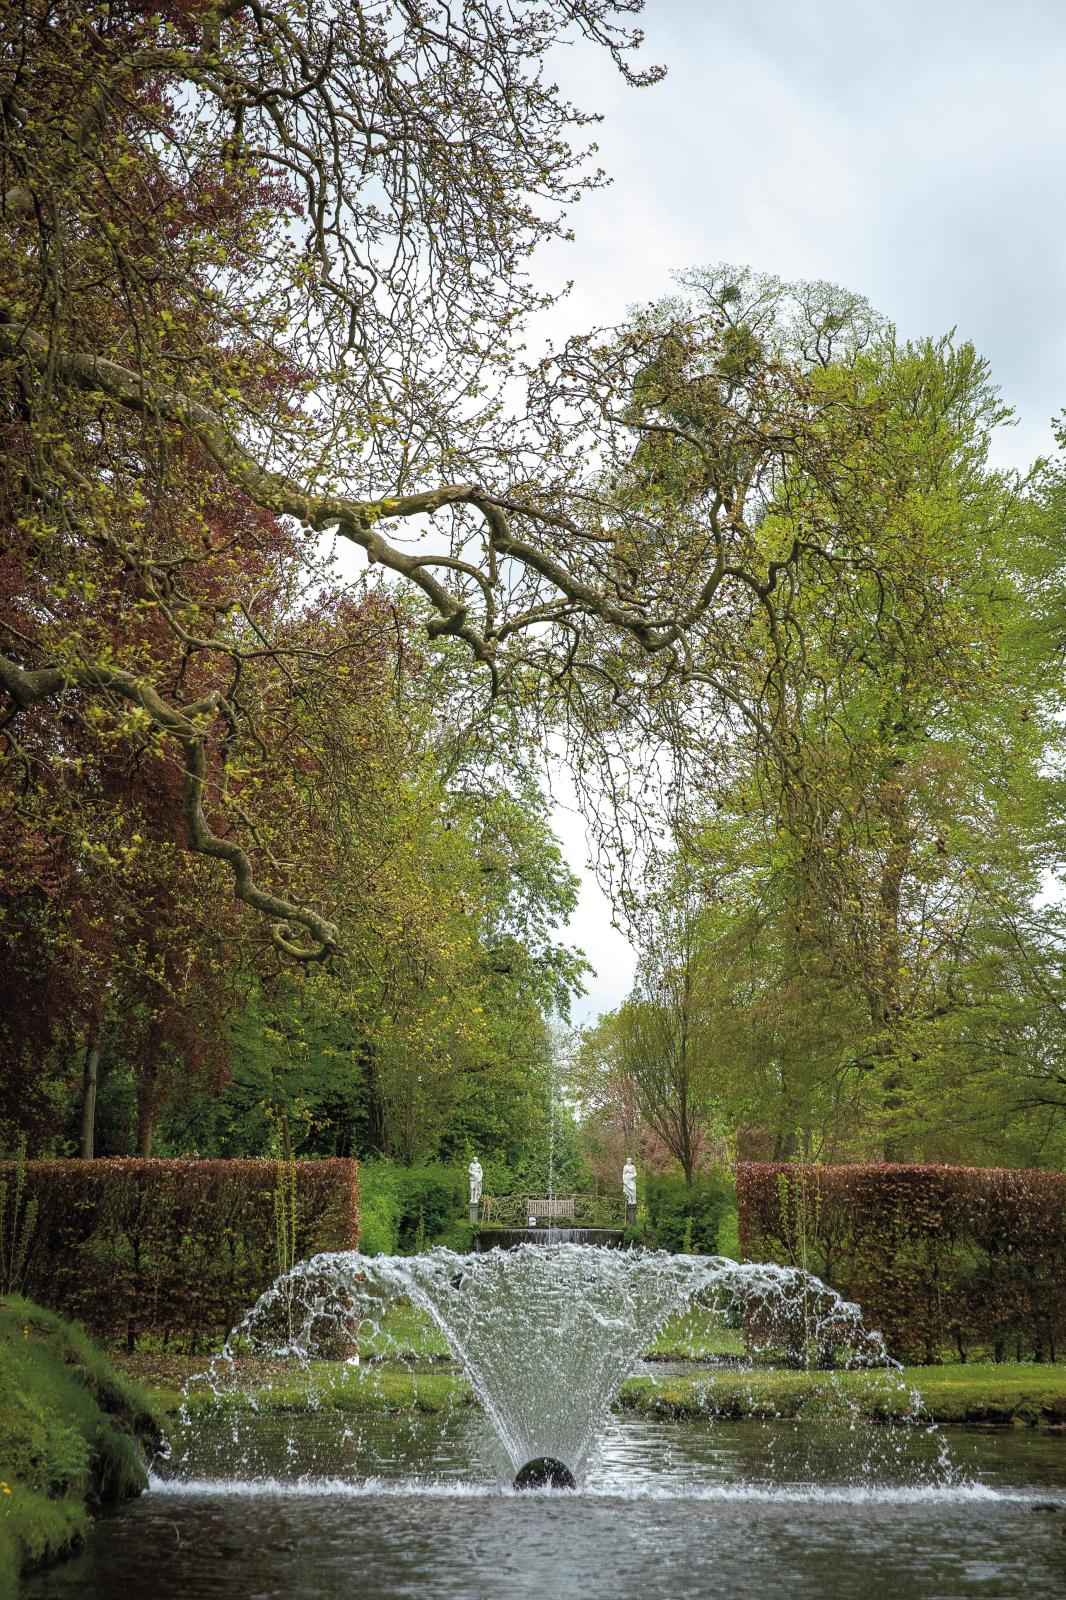 Les Jardins d’eau d’Annevoie : joyau belge du XVIIIe siècle